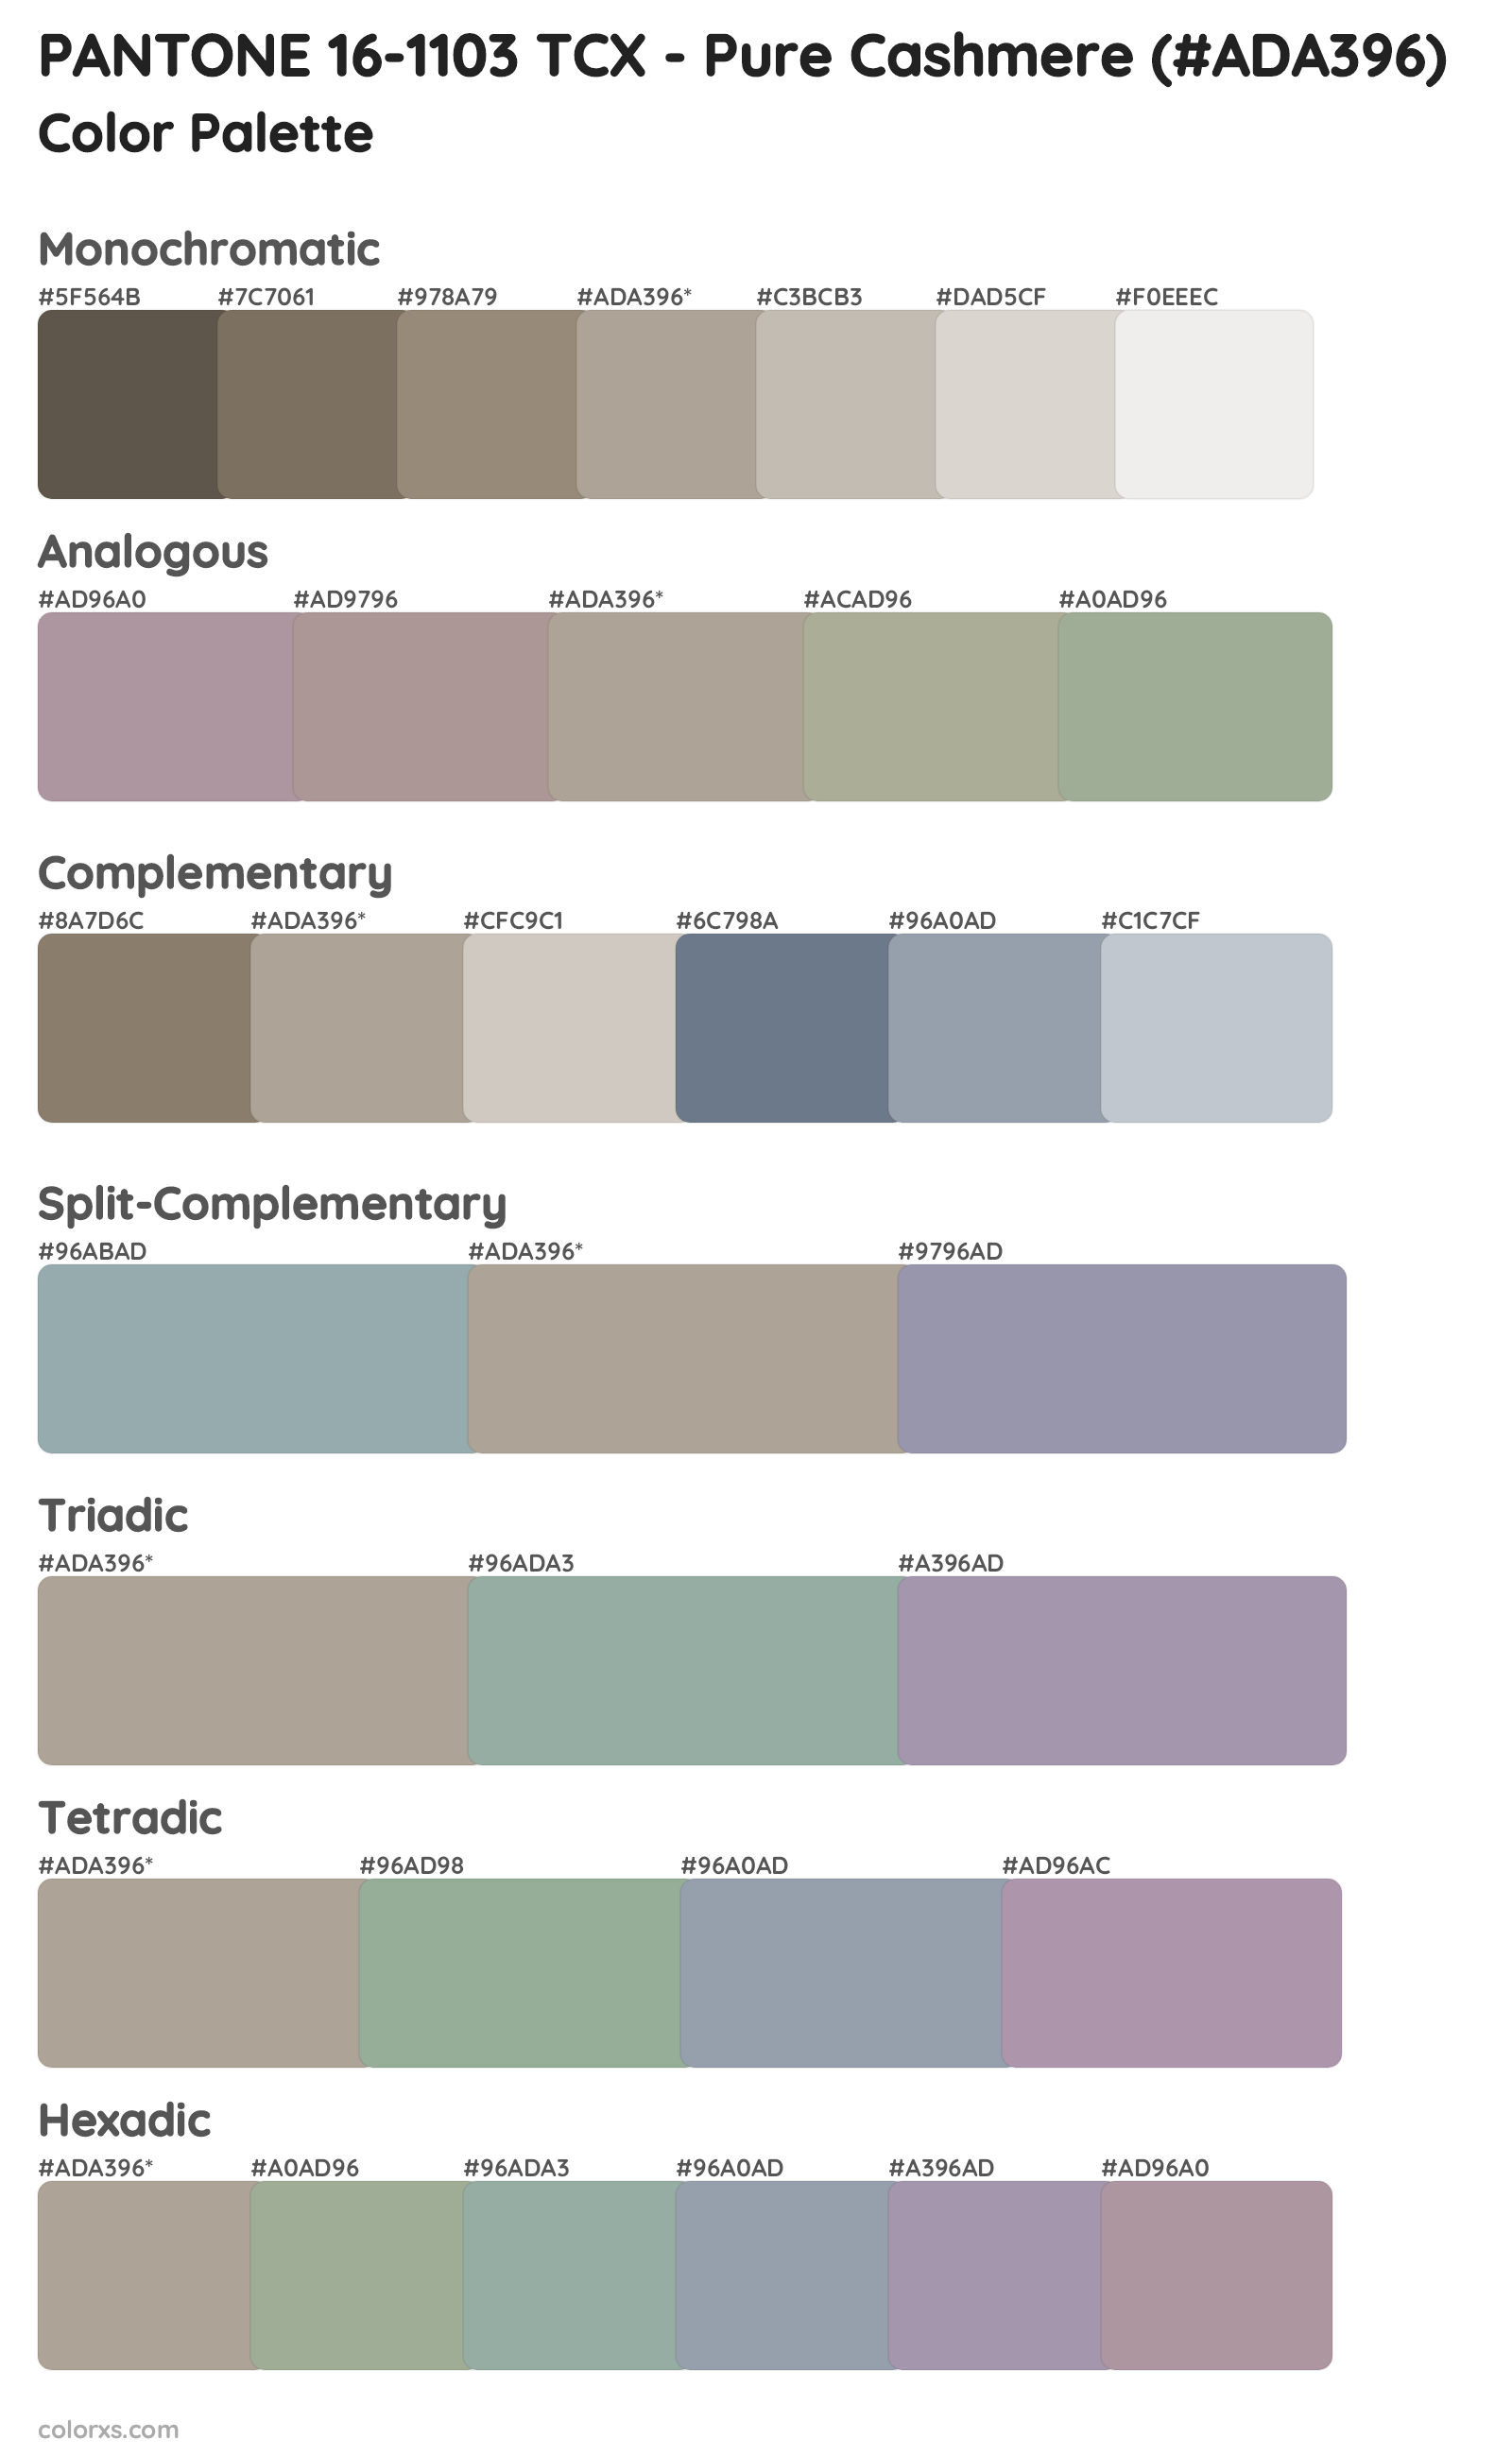 PANTONE 16-1103 TCX - Pure Cashmere Color Scheme Palettes